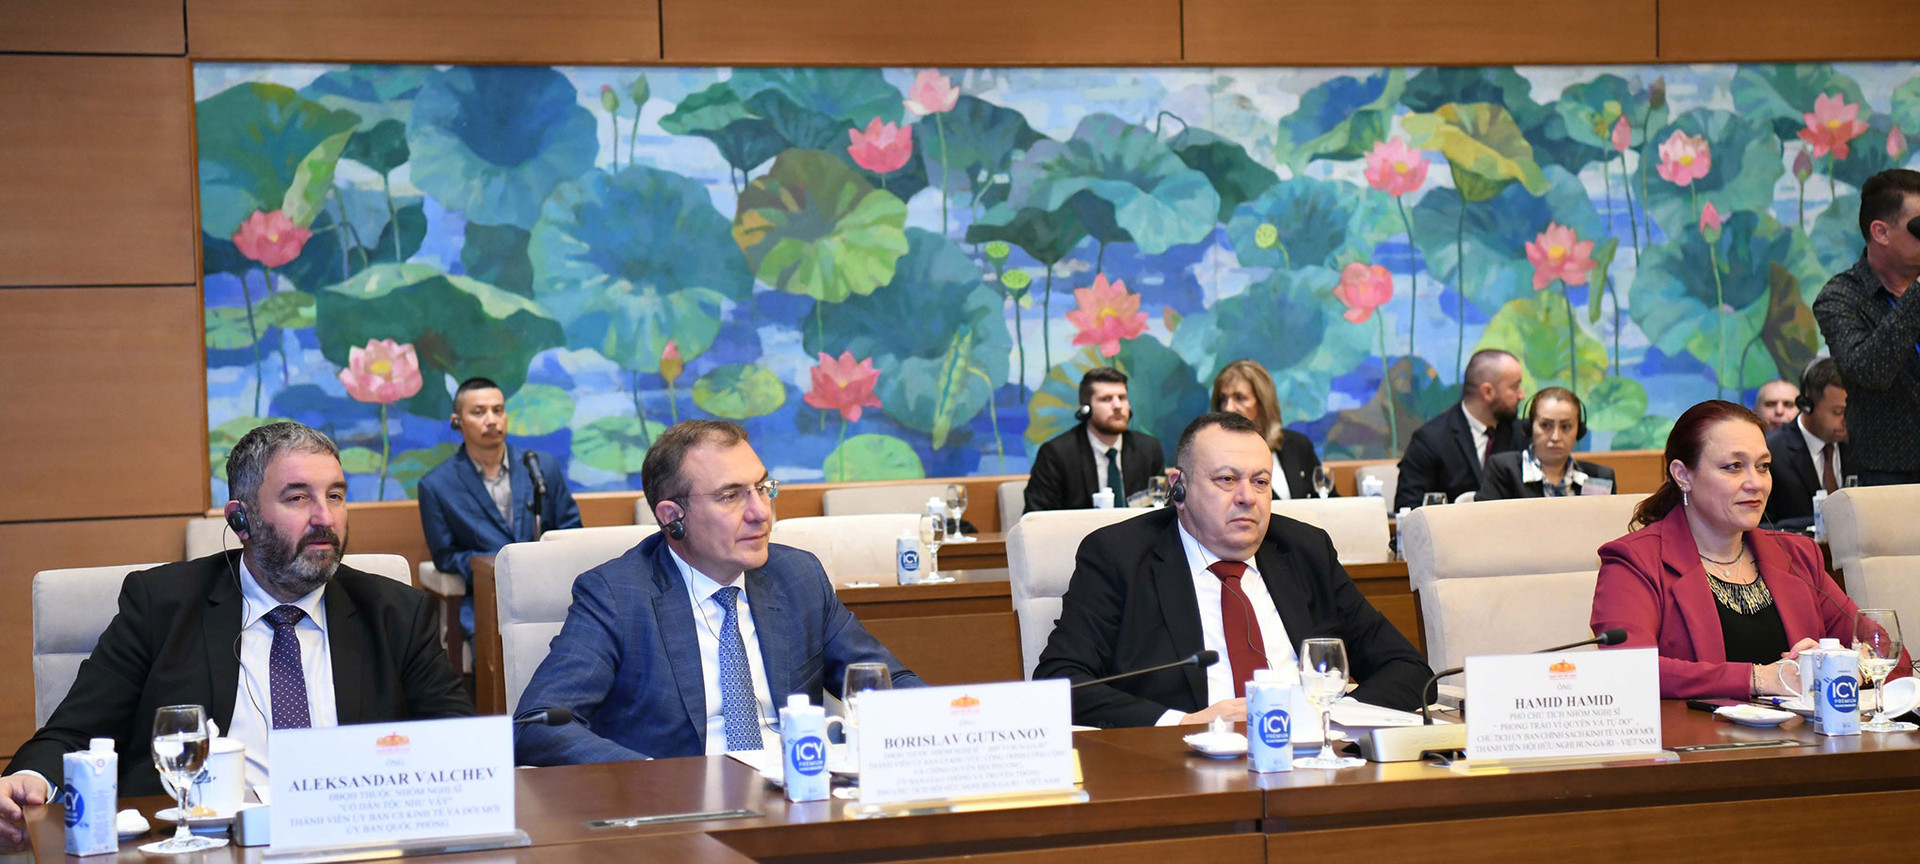 Chủ tịch Quốc hội Vương Đình Huệ hội đàm với Chủ tịch Quốc hội Bulgaria Rossen Dimitrov Jeliazkov -0